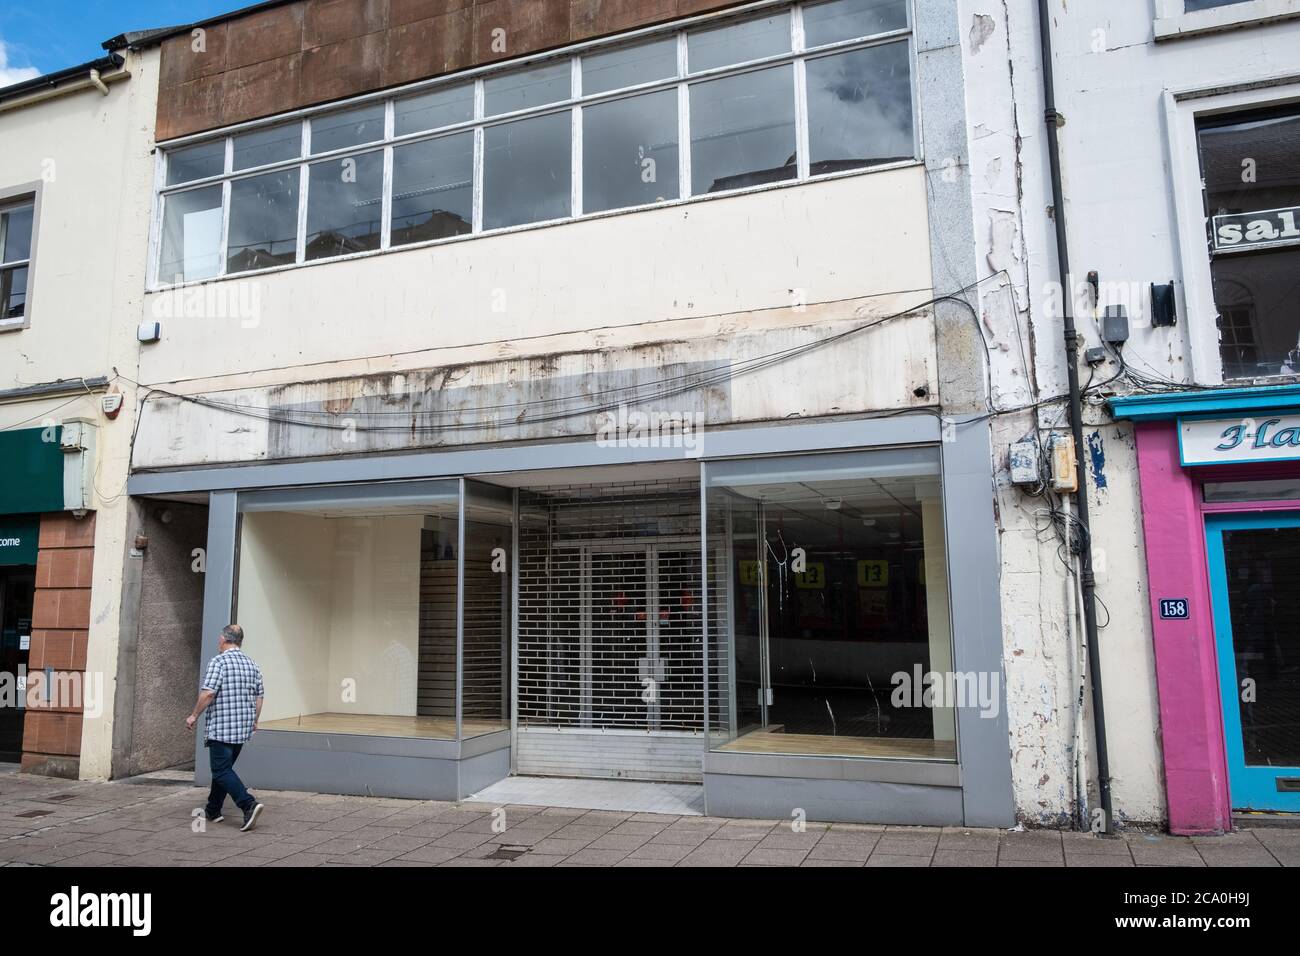 Le magasin de papeterie Ryman de Dumfries, en Écosse, a fermé ses portes après près de 25 ans dans la ville. La boutique a fermé en raison de la covid 19, mais elle n'a pas pu rouvrir. Banque D'Images